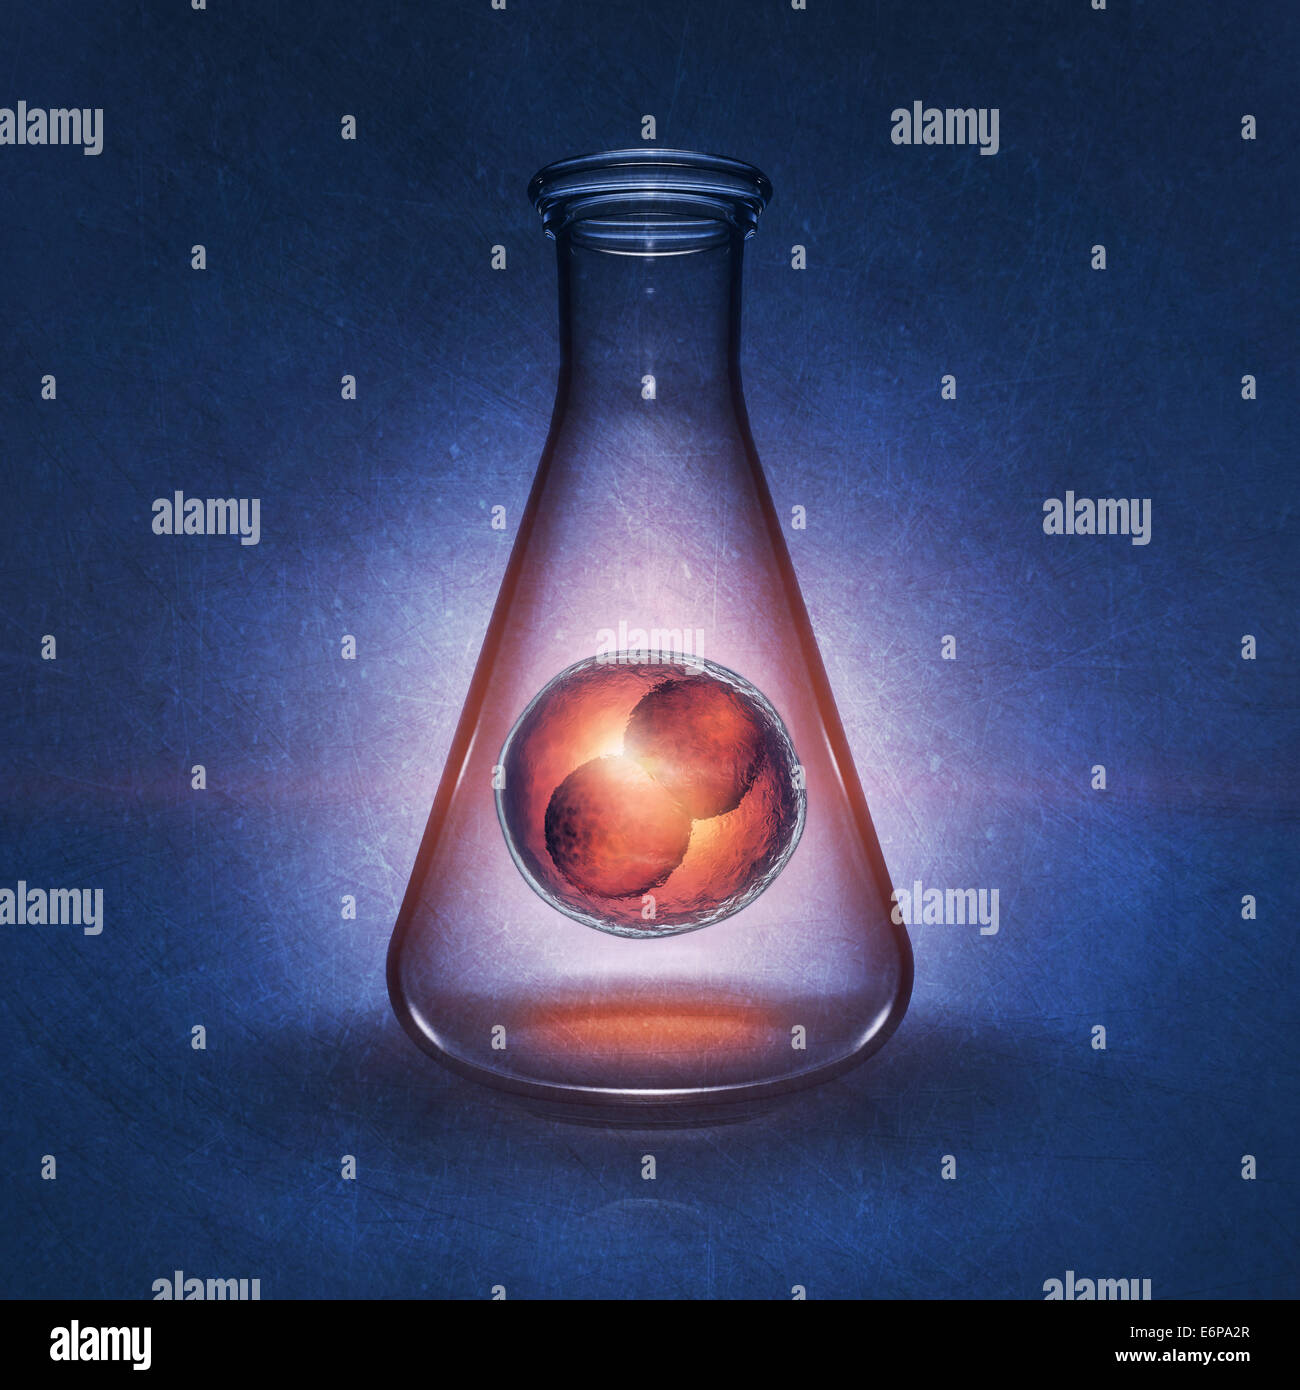 Zwei-Zell-Embryo im Labor Kolben auf blauem Hintergrund, detaillierte Darstellung Stockfoto